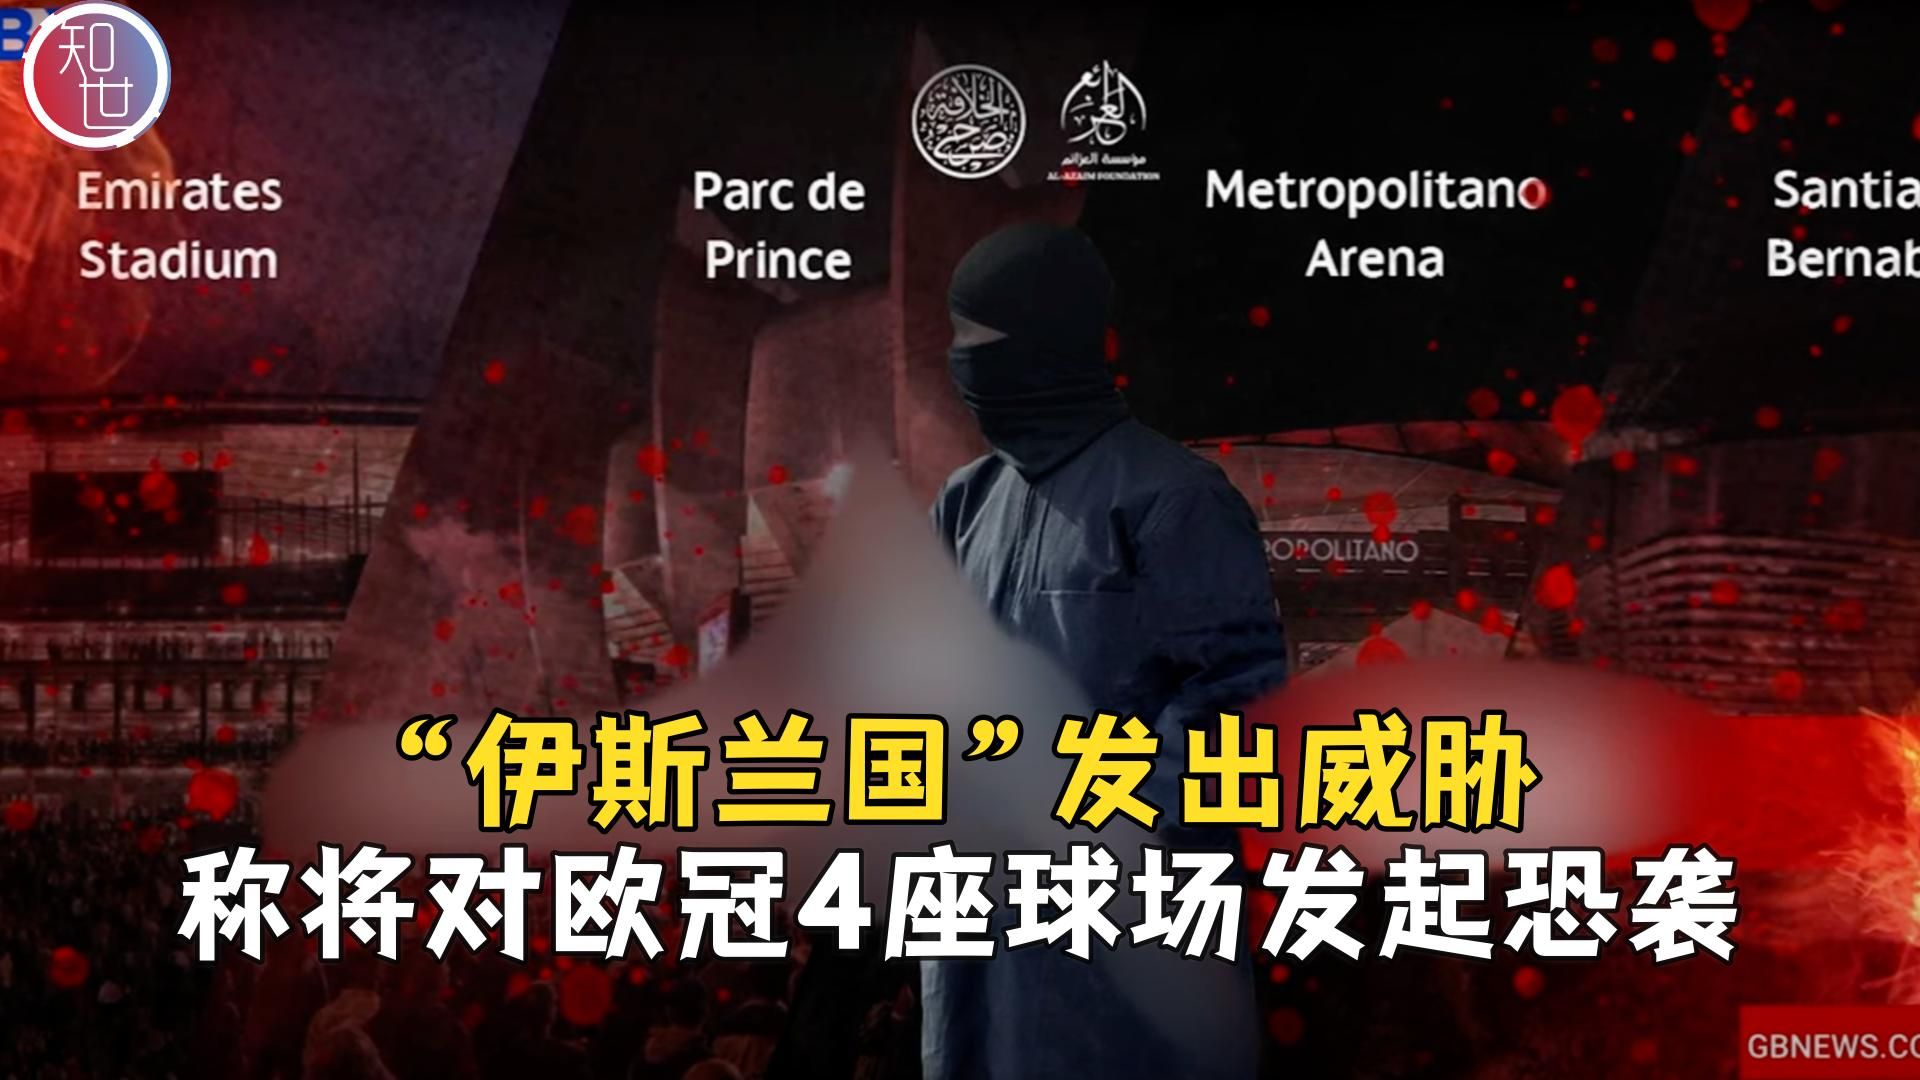 极端组织“伊斯兰国”宣布将对欧冠场馆发动恐怖袭击